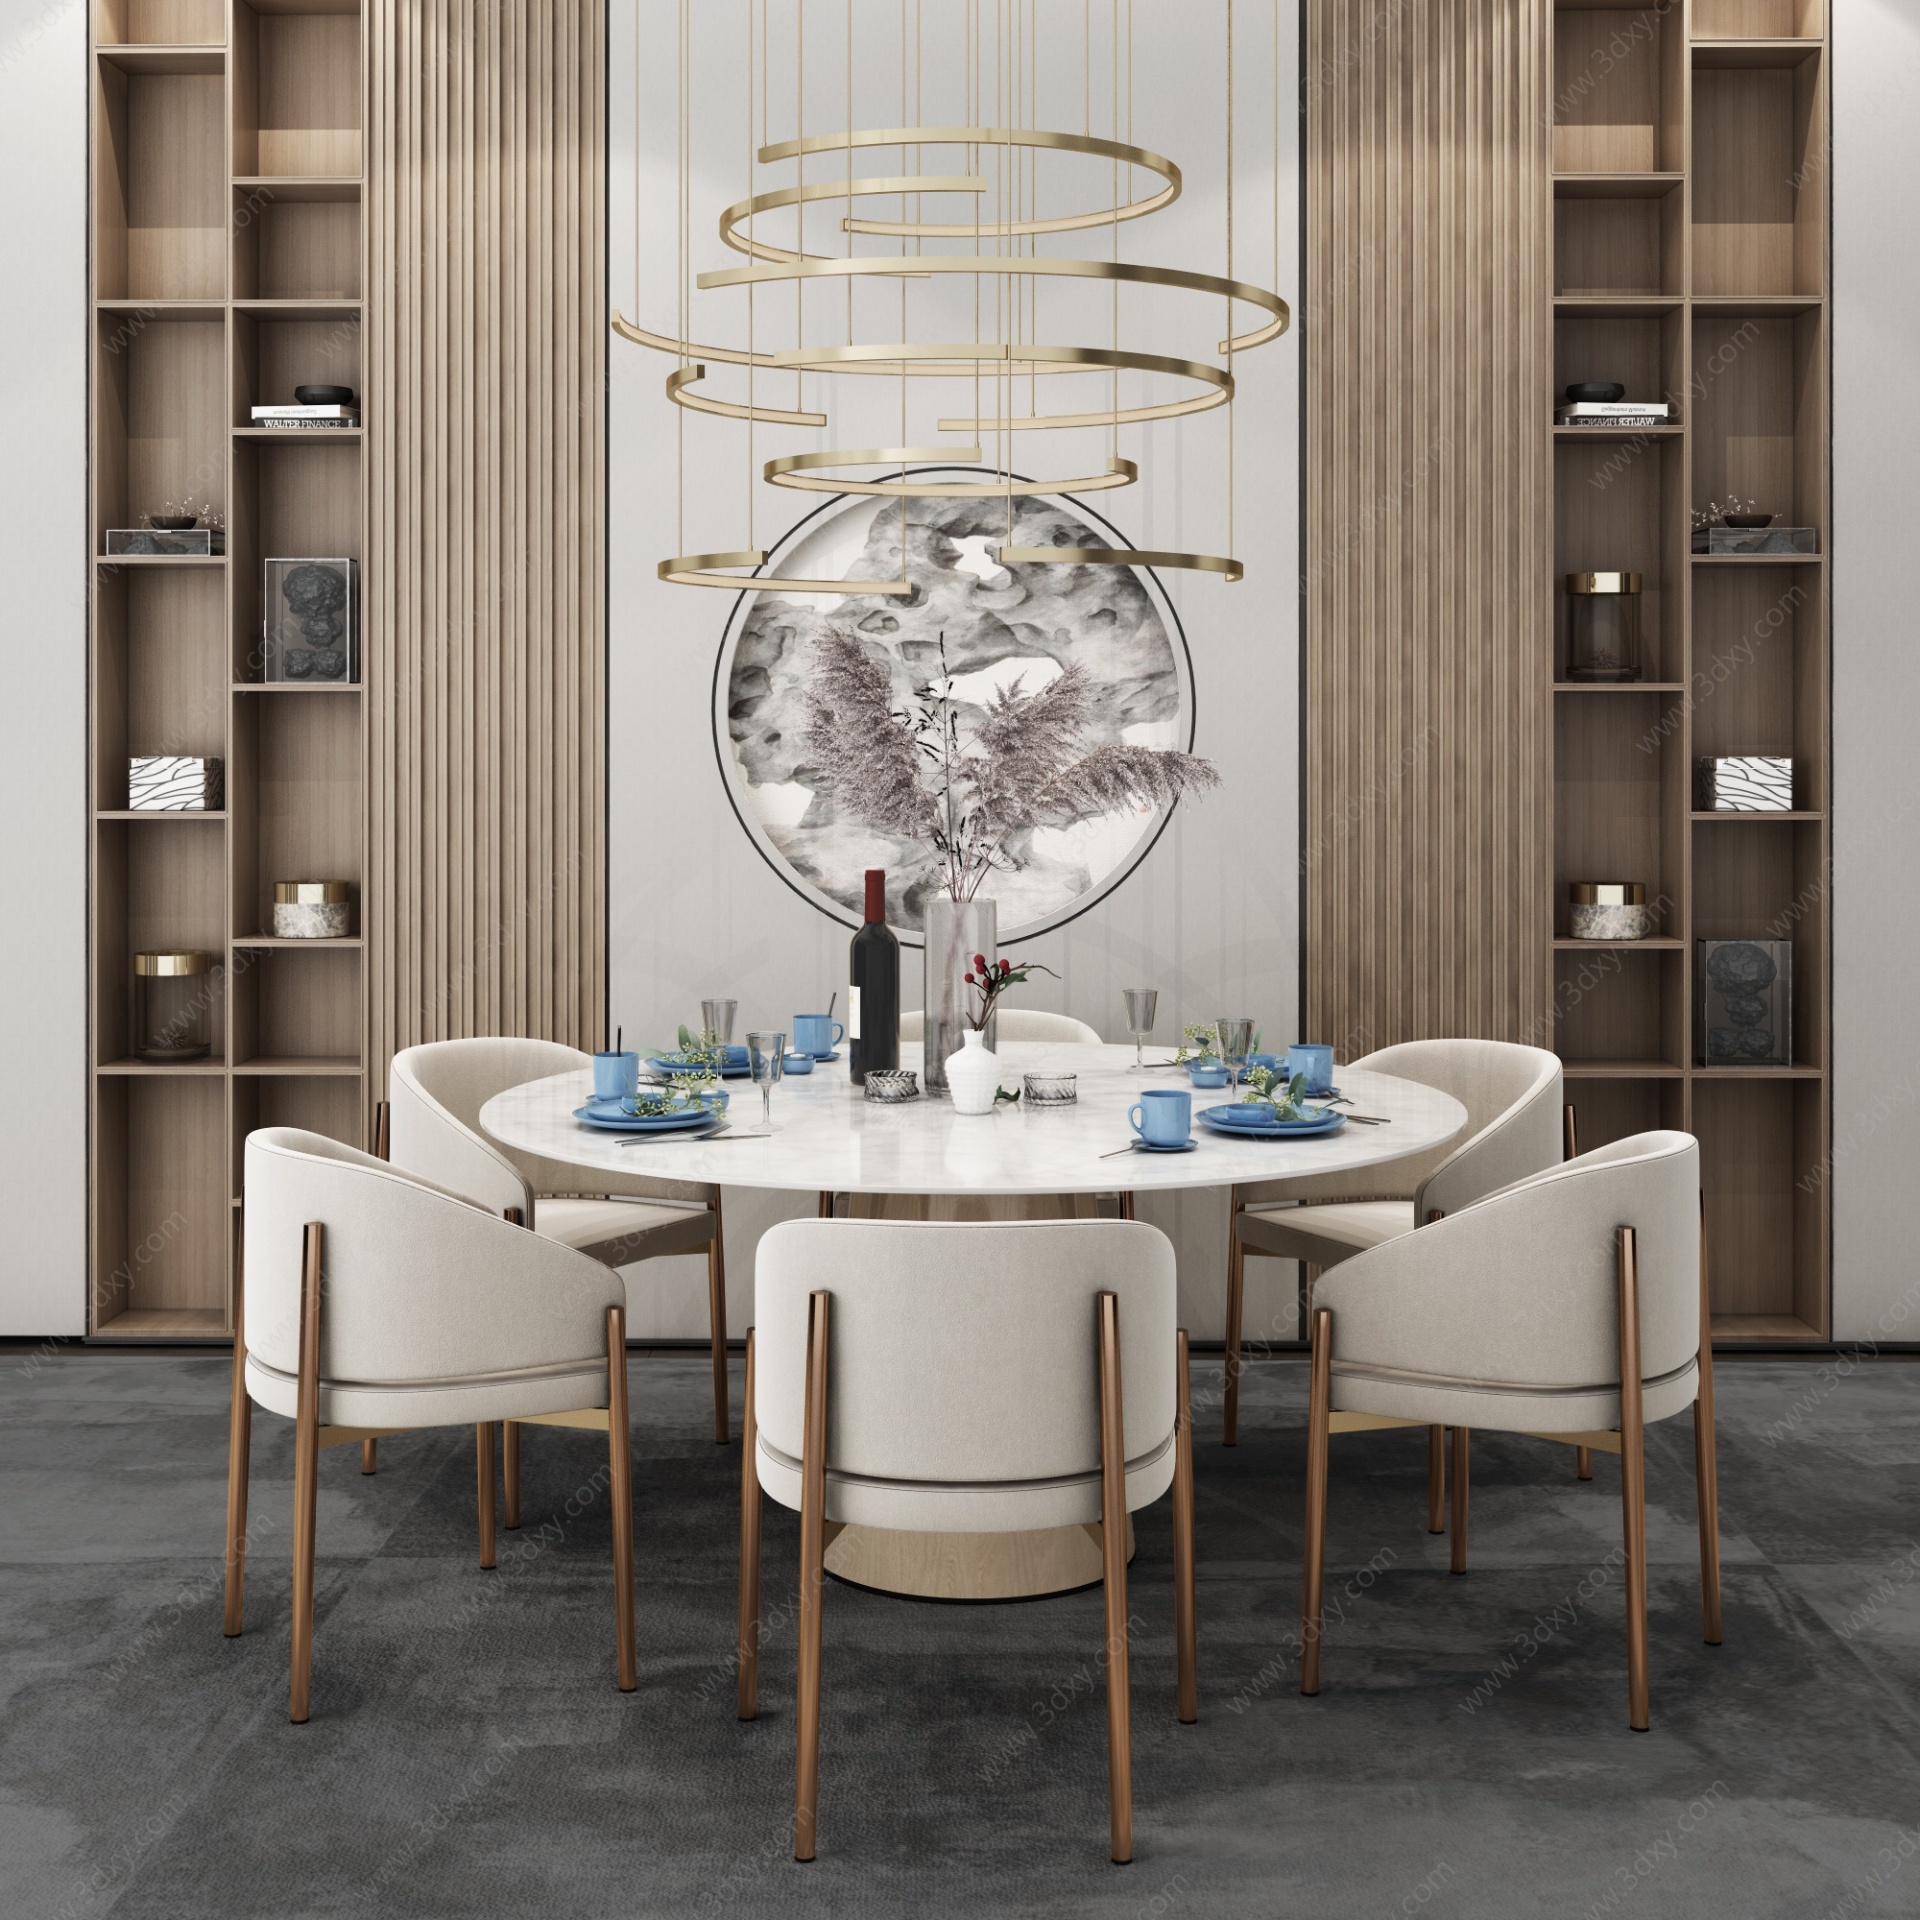 新中式餐厅圆型餐桌餐椅3D模型